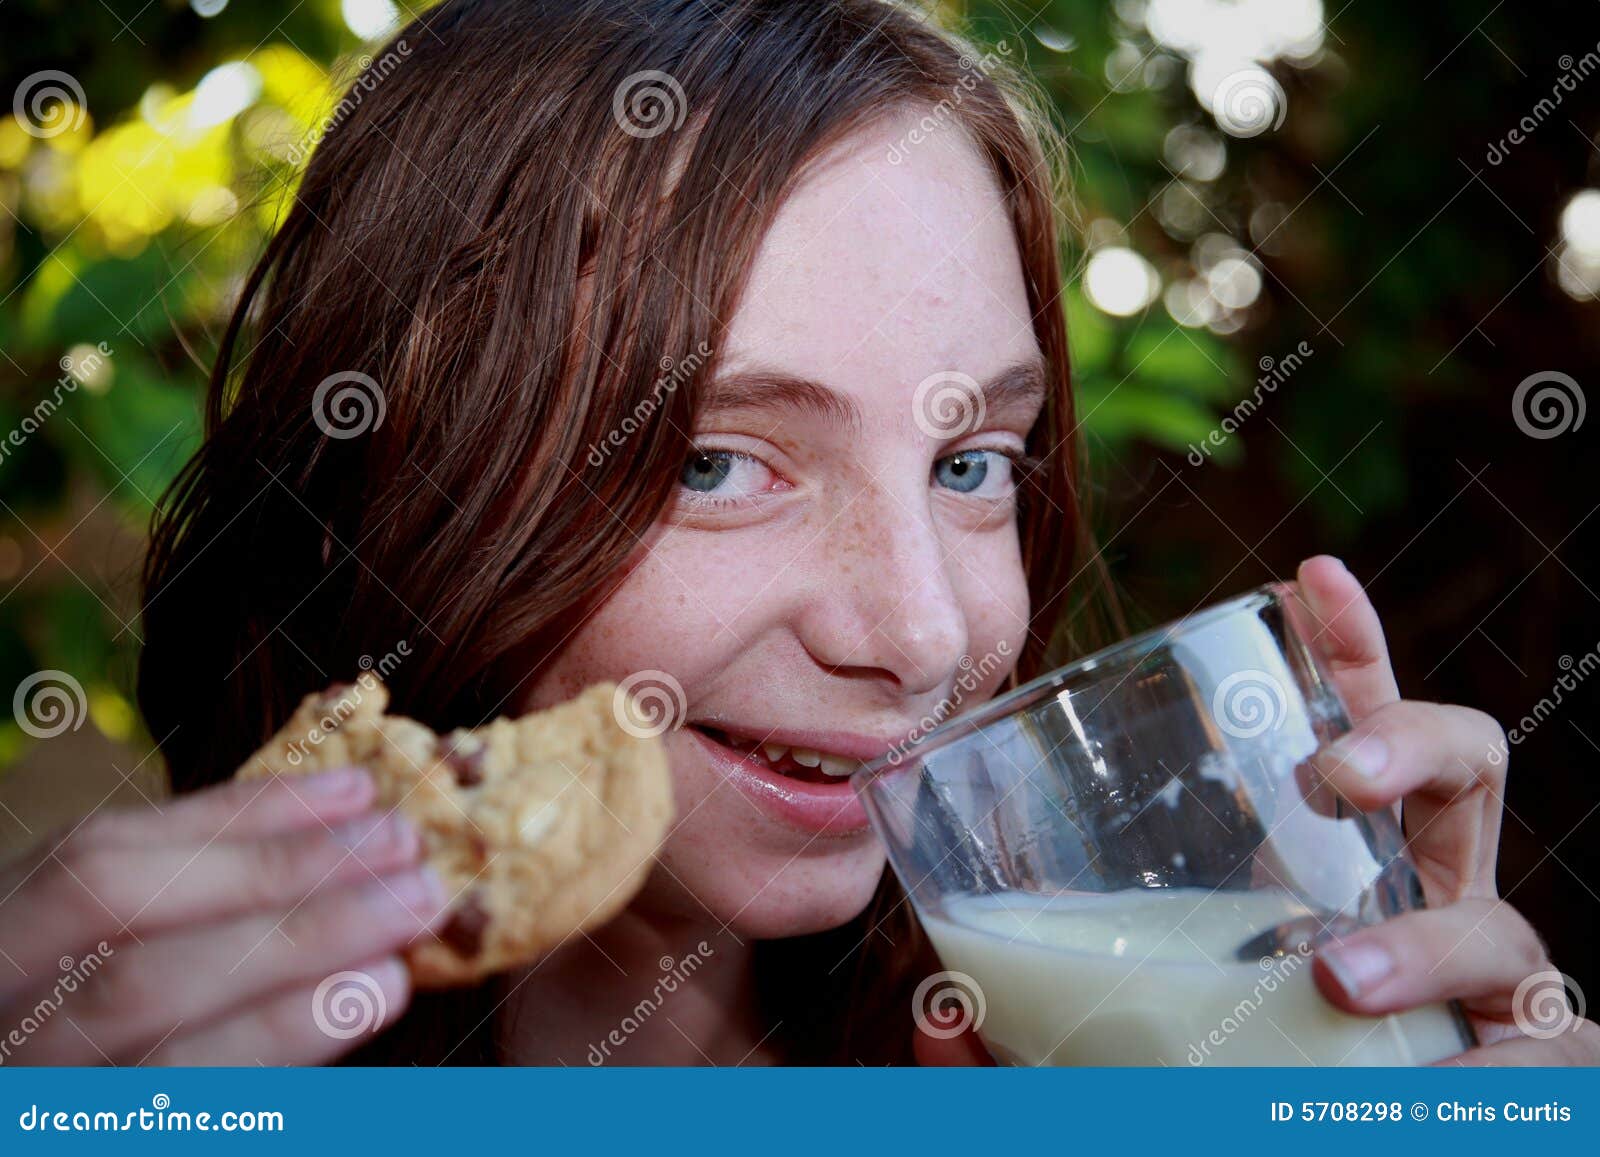 Girl eating cookies and milk - girl-eating-cookies-milk-5708298